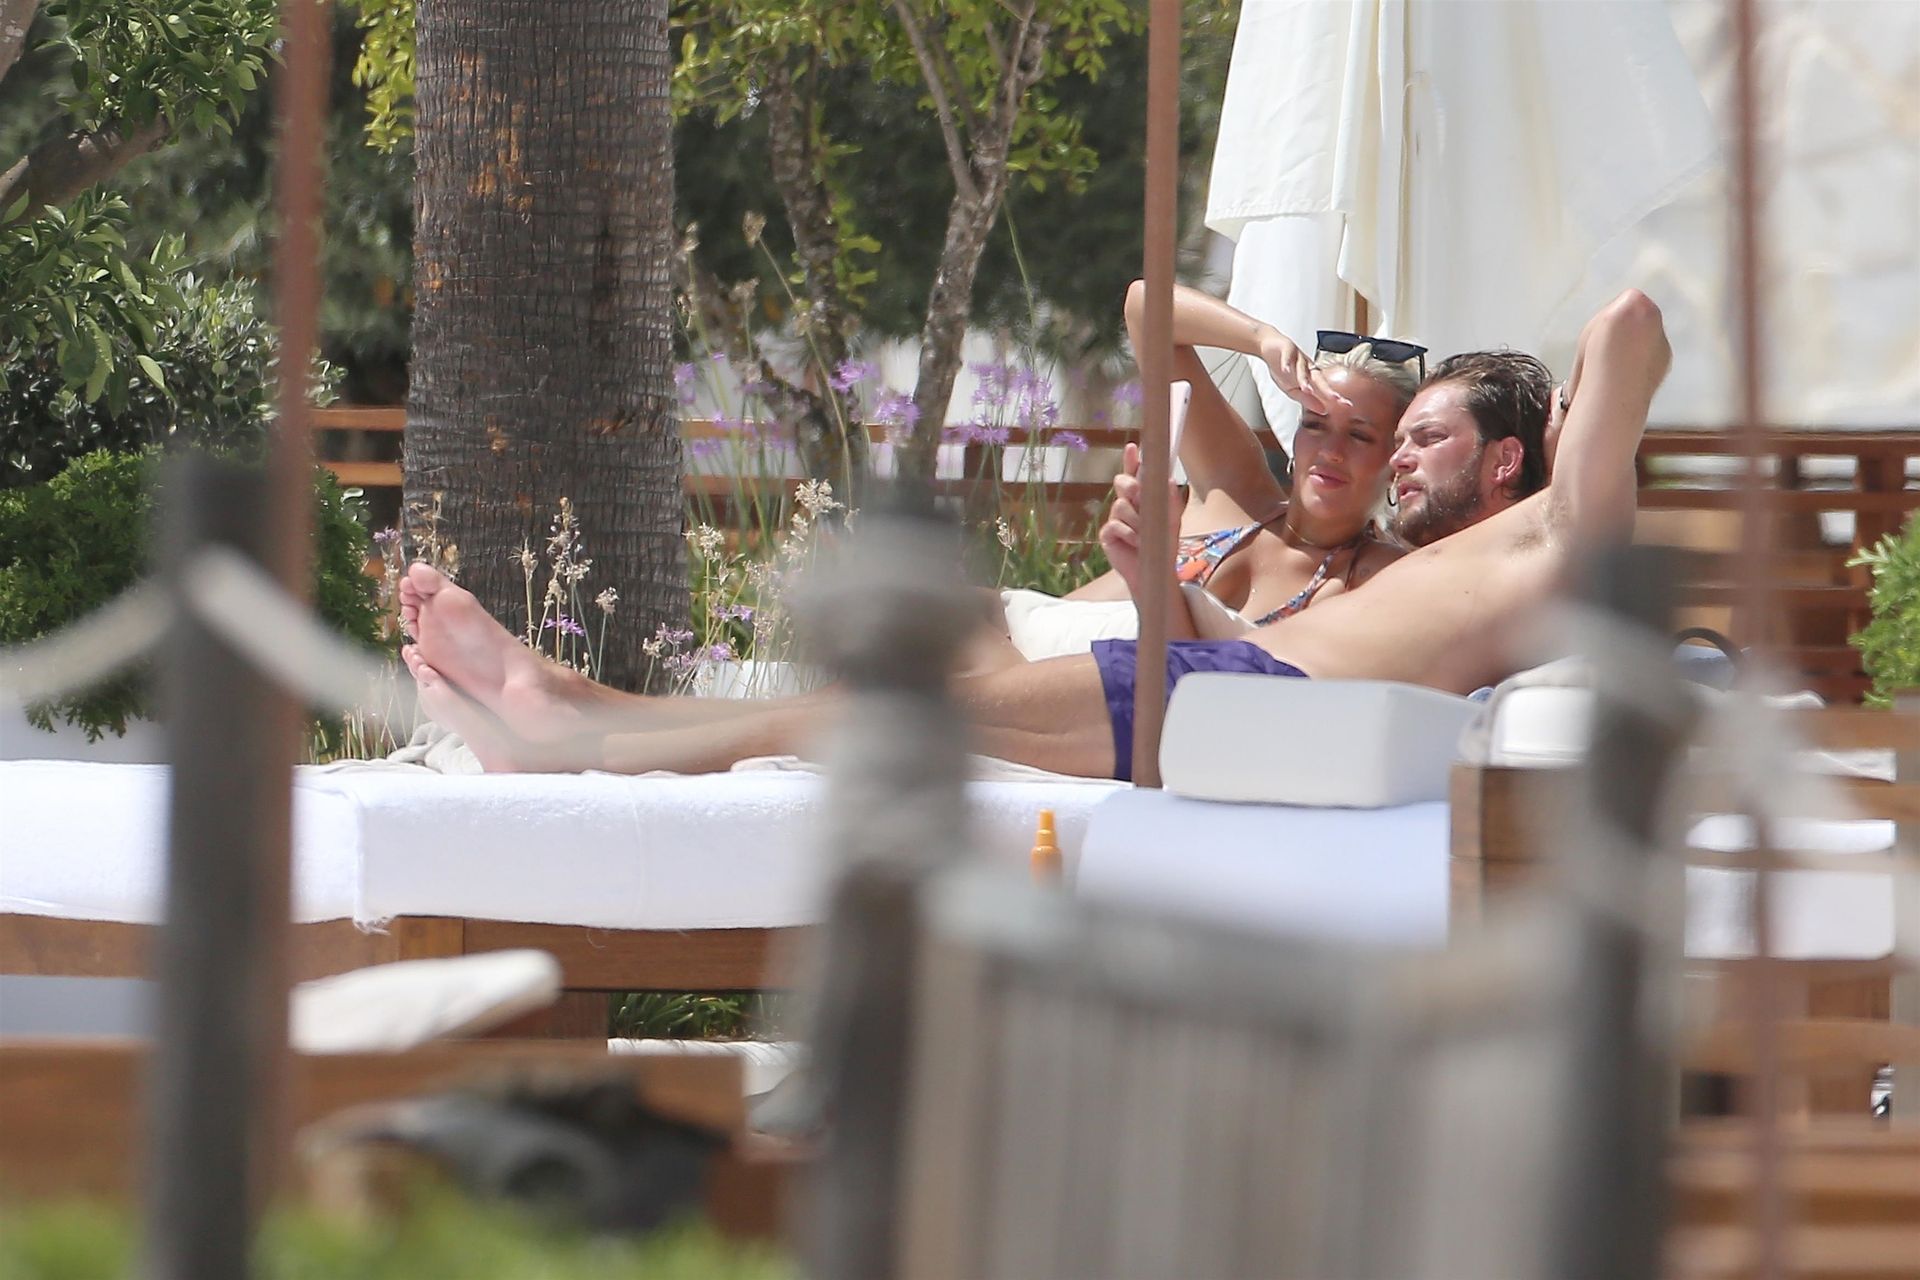 Lewis Burton & Lottie Tomlinson Enjoy Their Holiday in Ibiza (91 Photos)